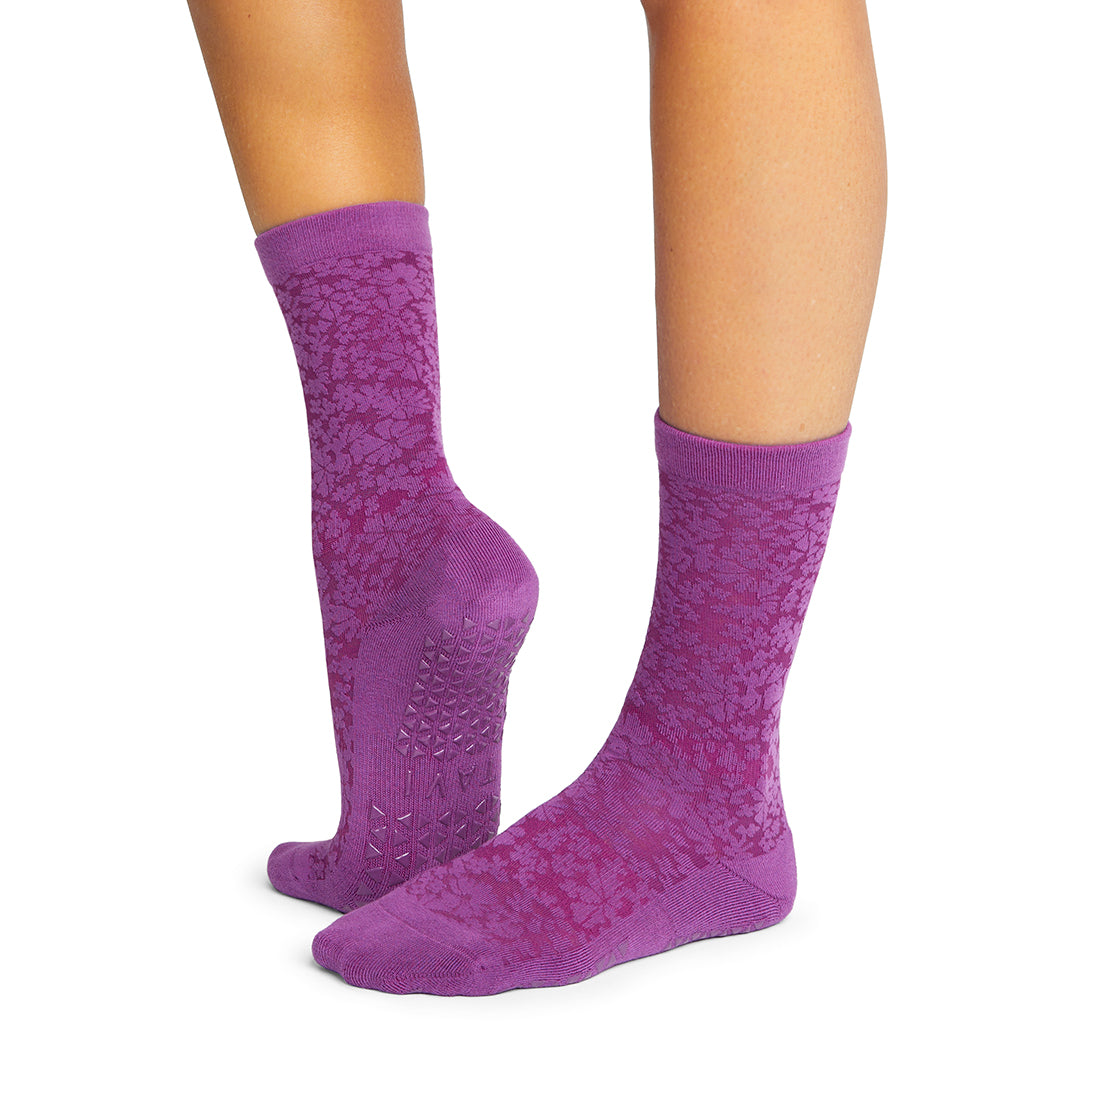 Tavi Noir Lola Grip Socks DESIRE SMALL: Buy Online at Best Price in UAE 